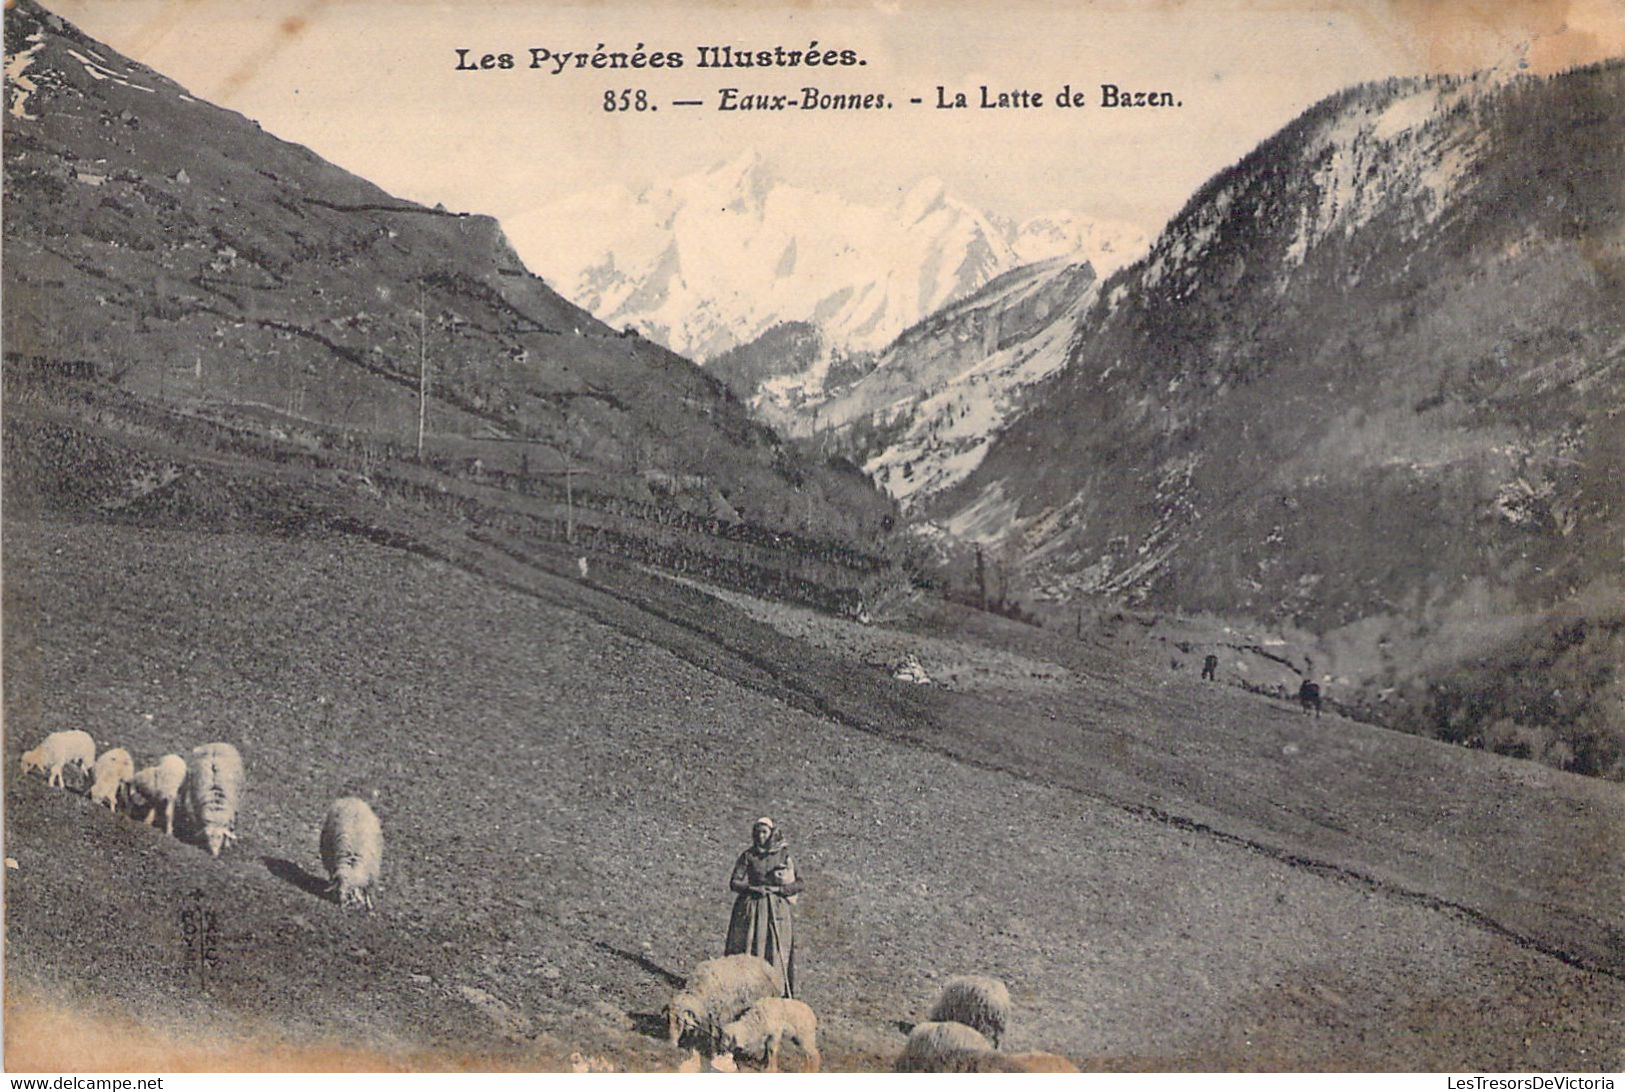 FRANCE - 64 - EAUX BONNES - La Latte De Bazen - Carte Postale Ancienne - Eaux Bonnes